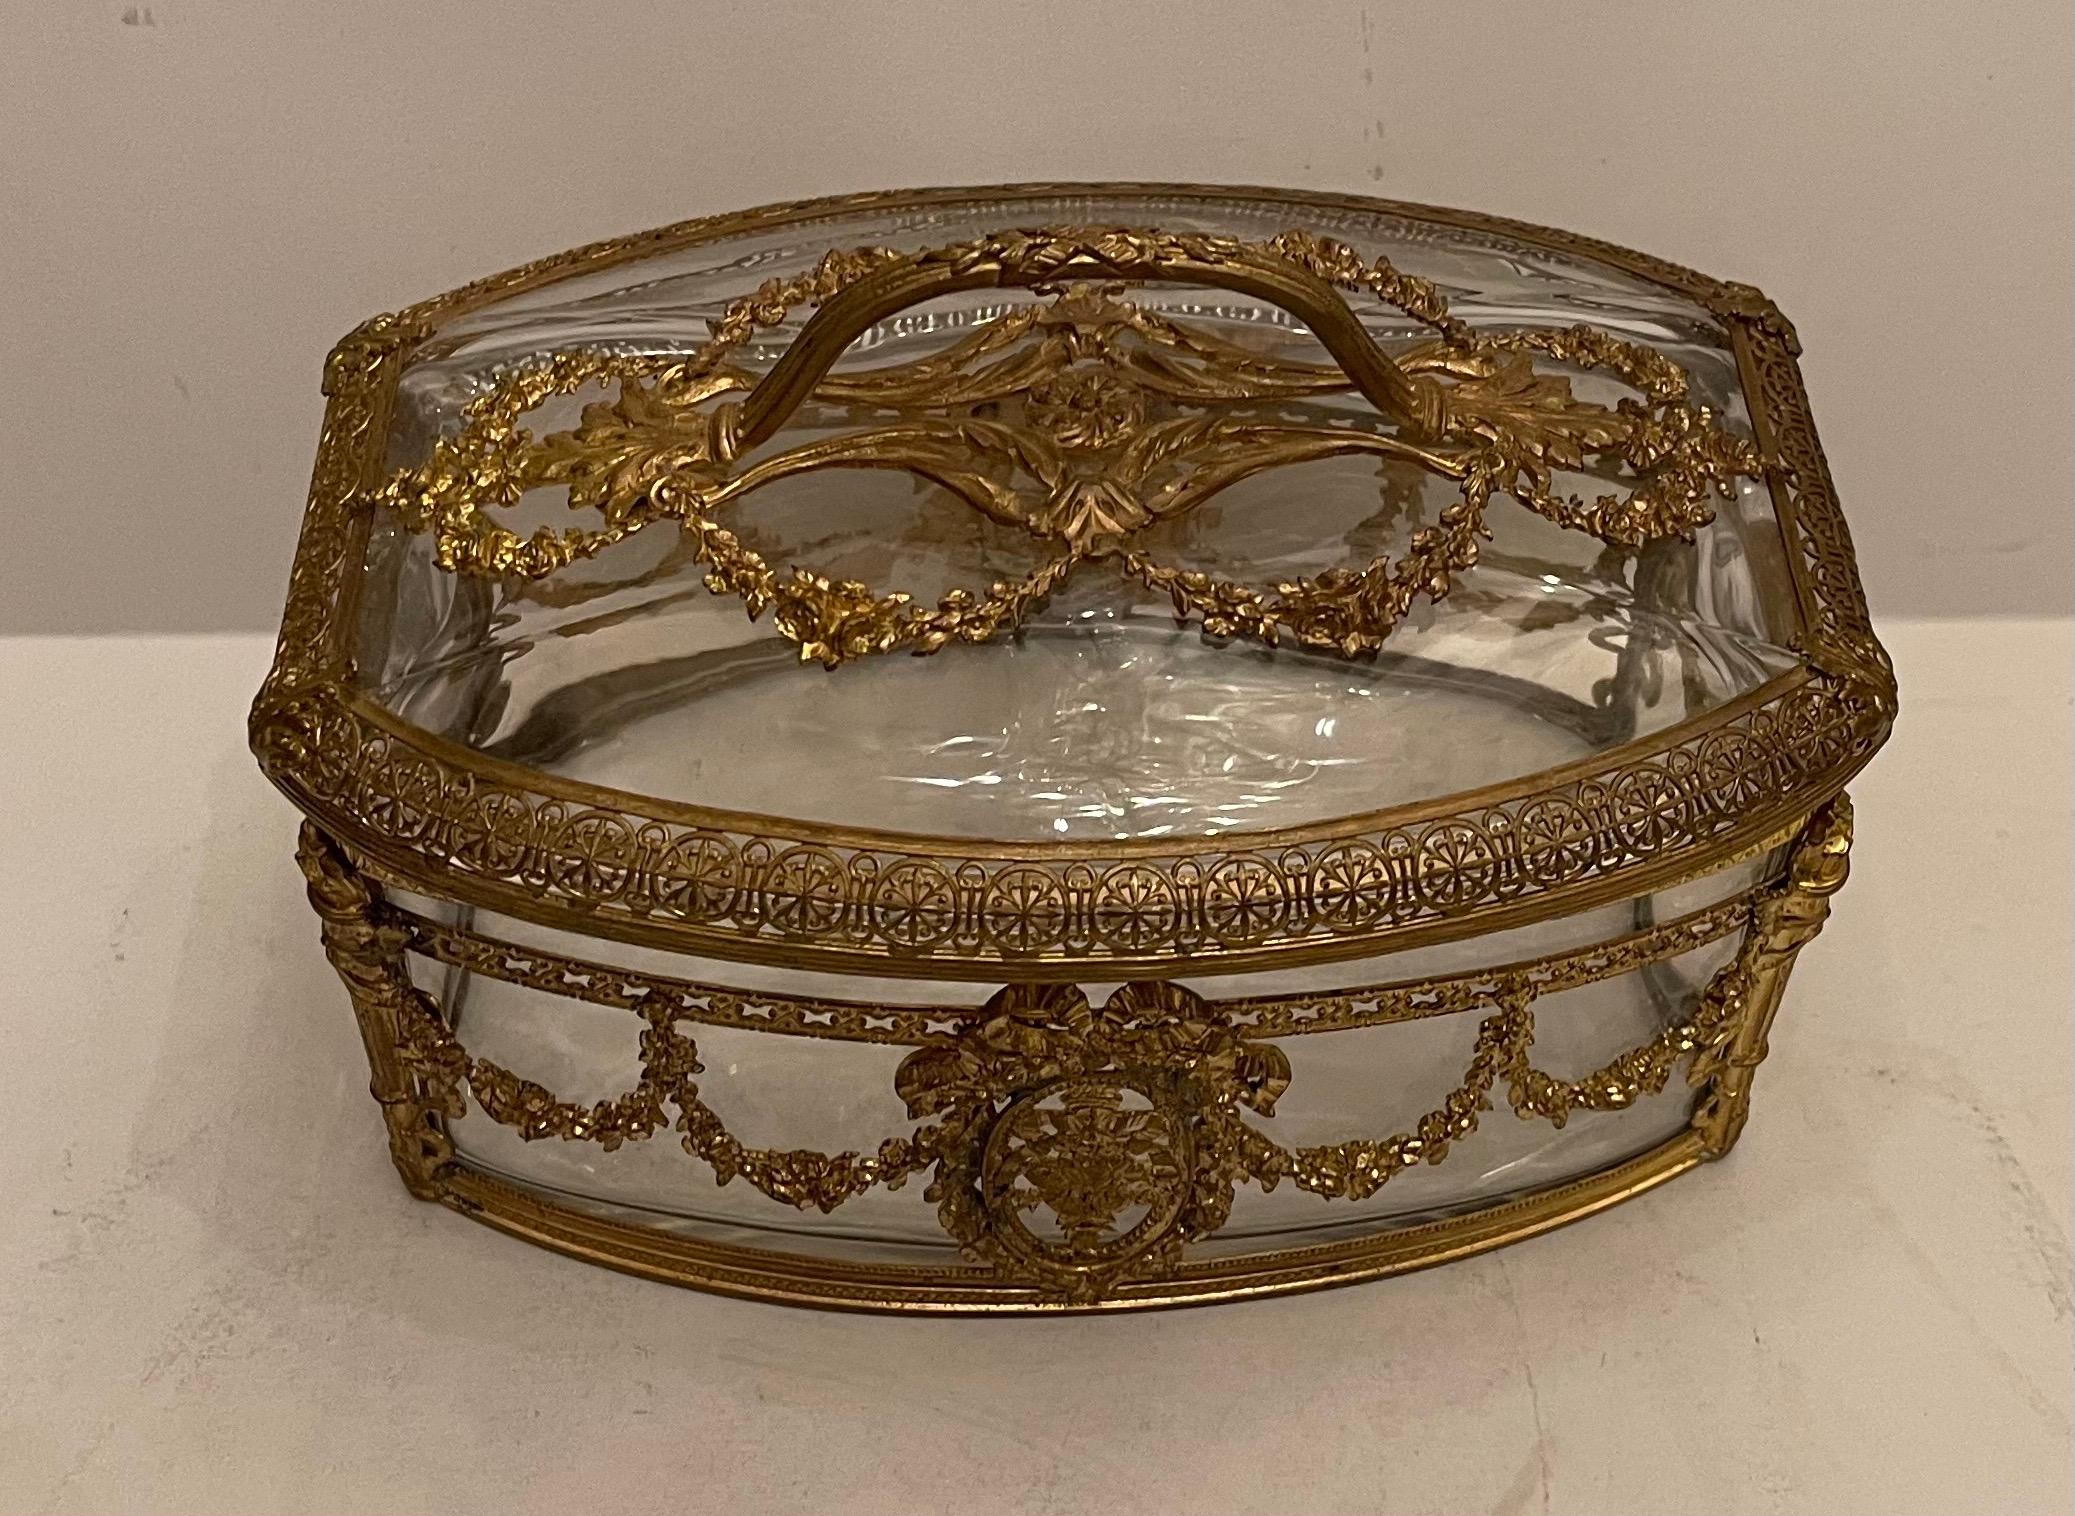 Wonderful large French Napoleon III style ormolu bronze mounted & crystal / glass casket jewelry box with open work handle.